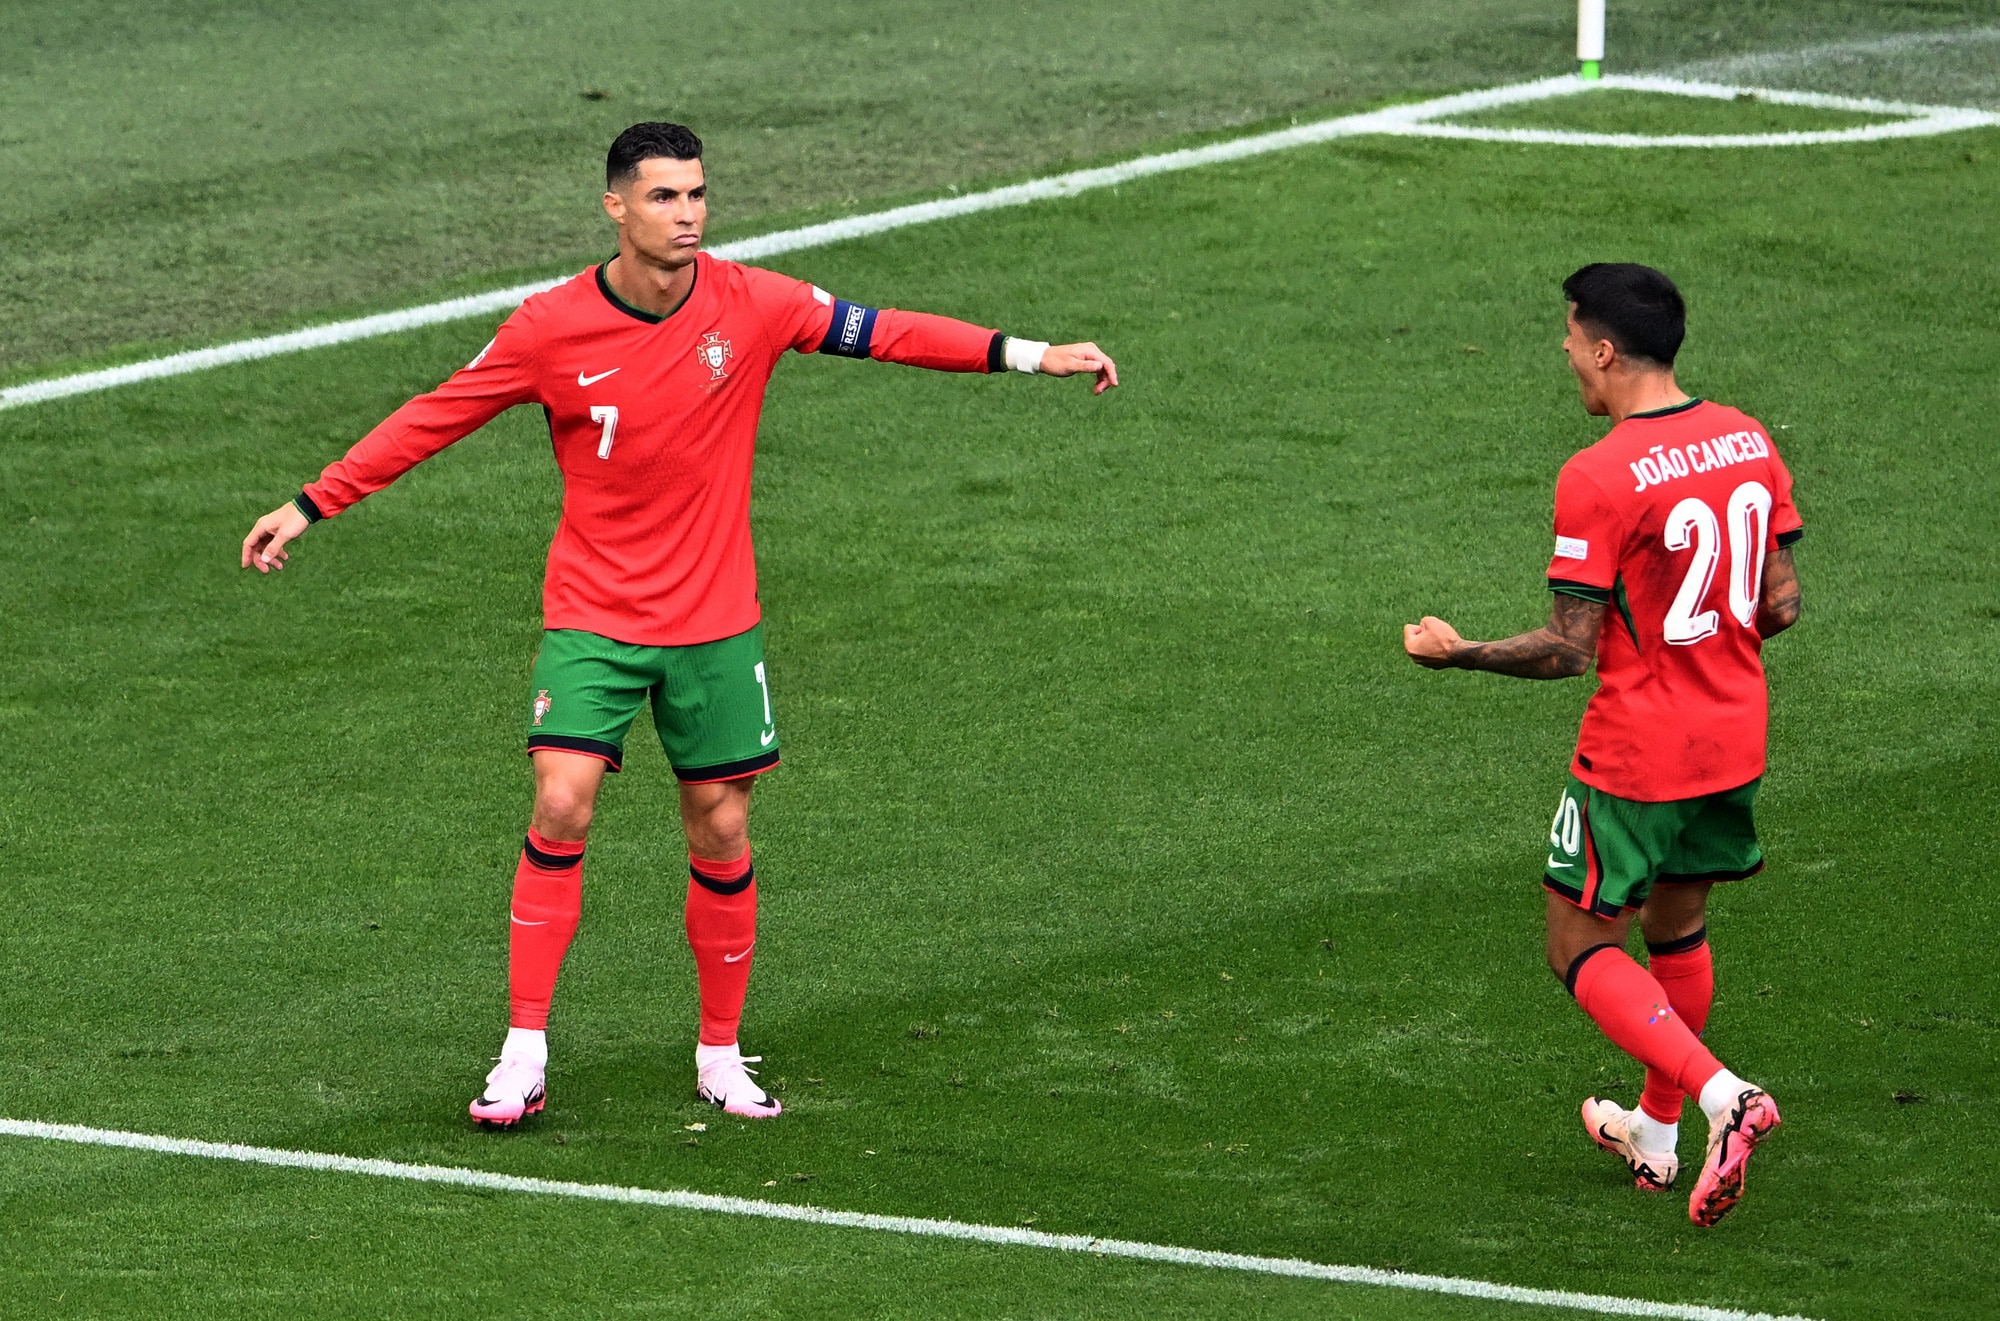 Ronaldo đi vào lịch sử Euro với số lần kiến tạo thành bàn nhiều nhất - 8 lần - Ảnh: REUTERS